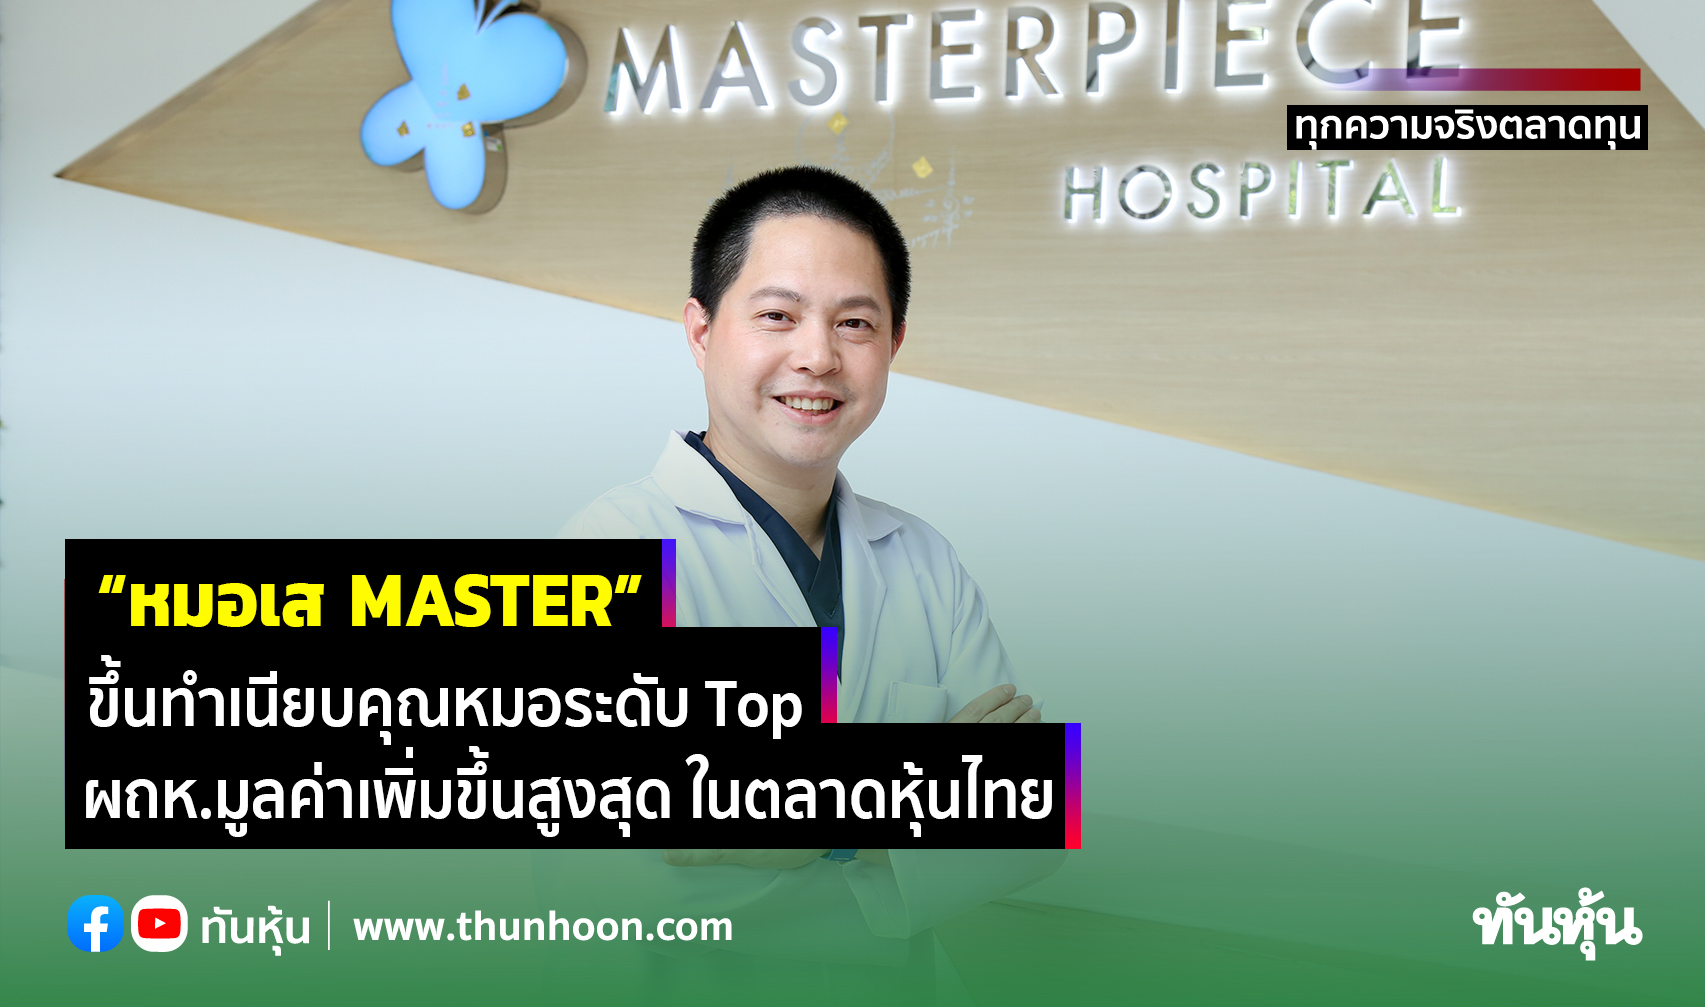 “หมอเส MASTER”  ขึ้นทำเนียบคุณหมอระดับ Top ผถห.มูลค่าเพิ่มขึ้นสูงสุด ในตลาดหุ้นไทย